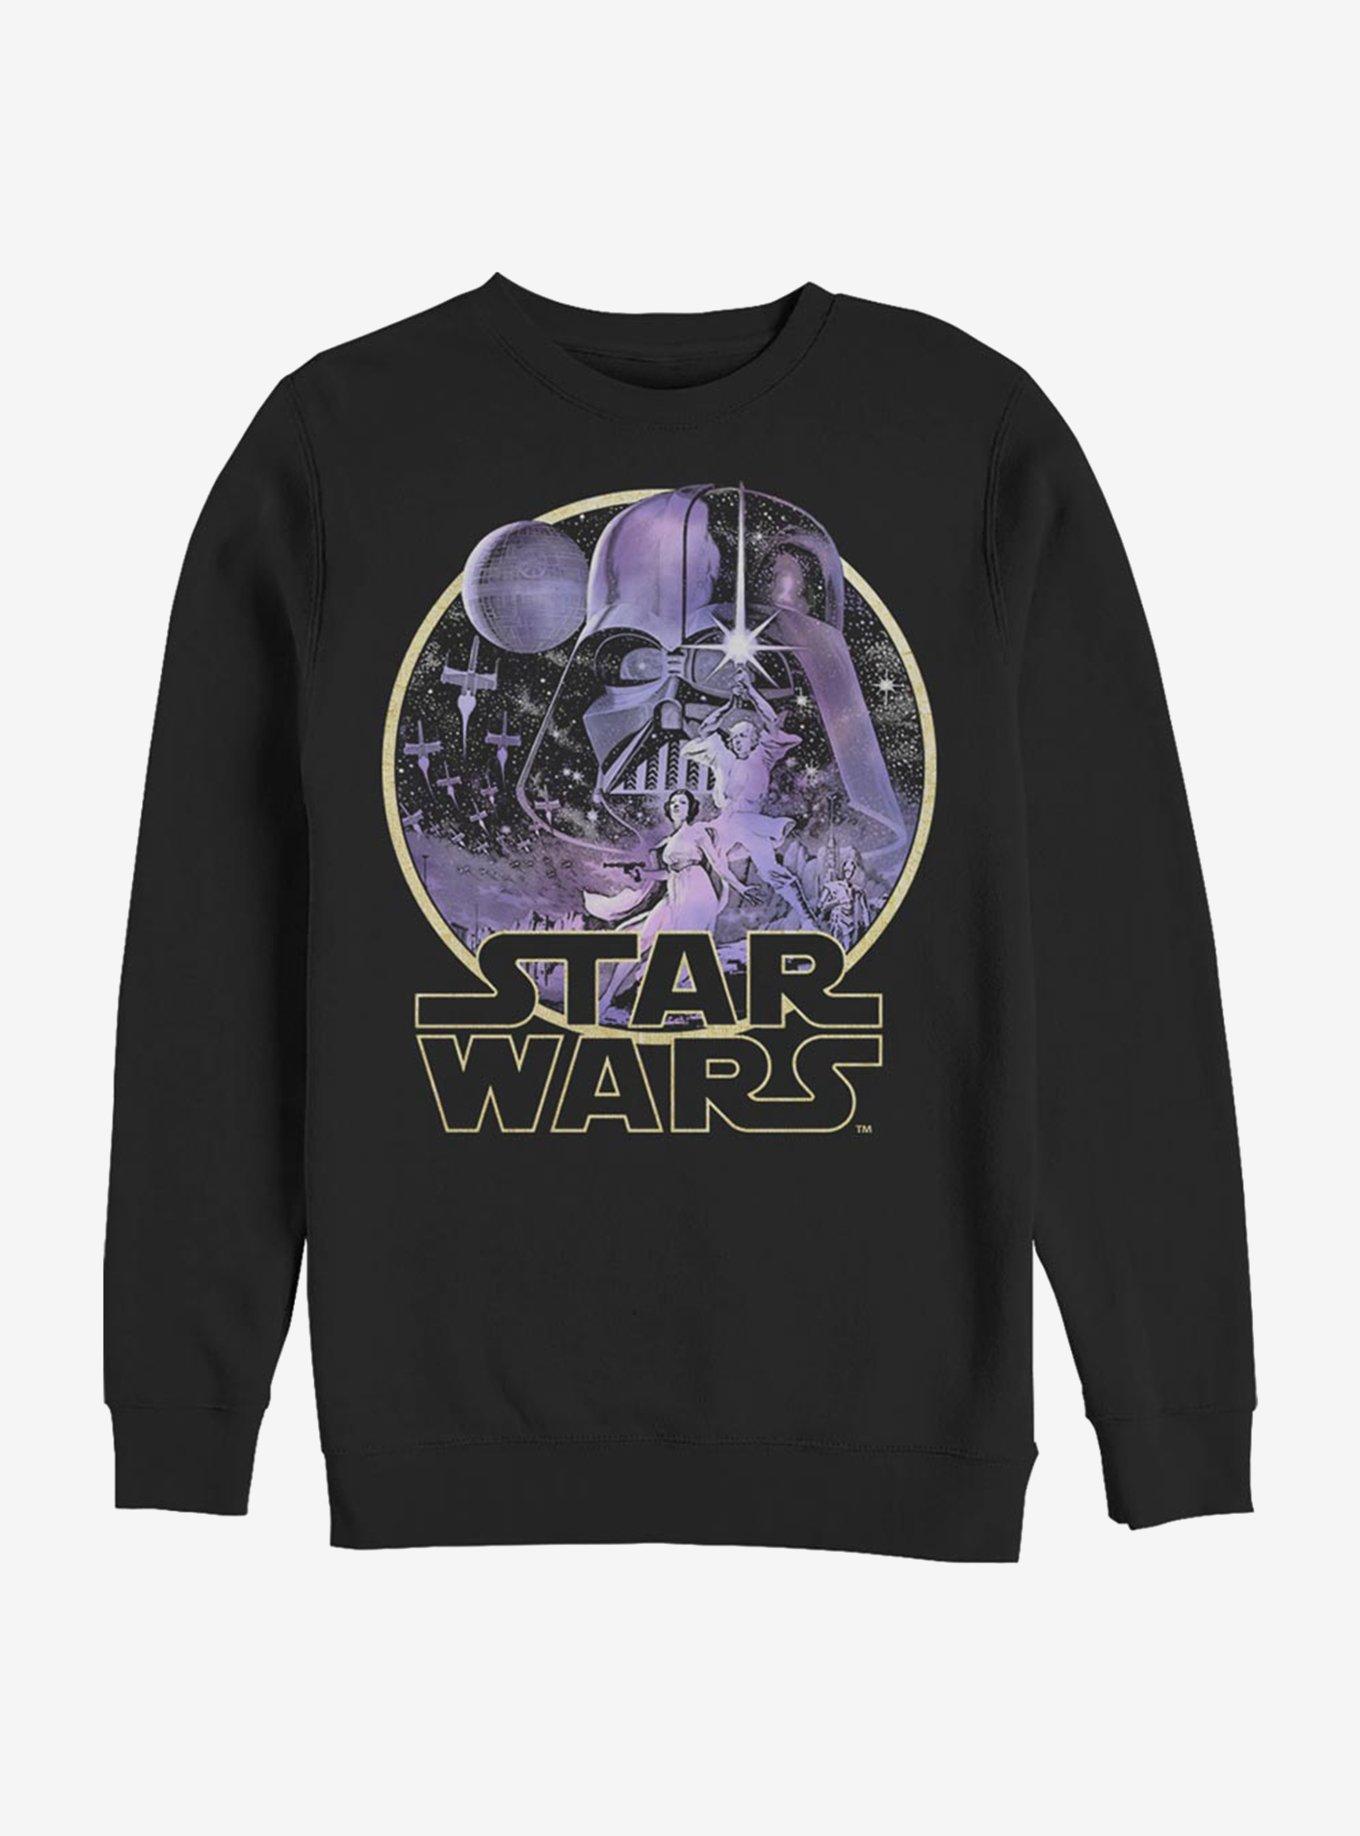 Star Wars Celestial Wars Sweatshirt, BLACK, hi-res